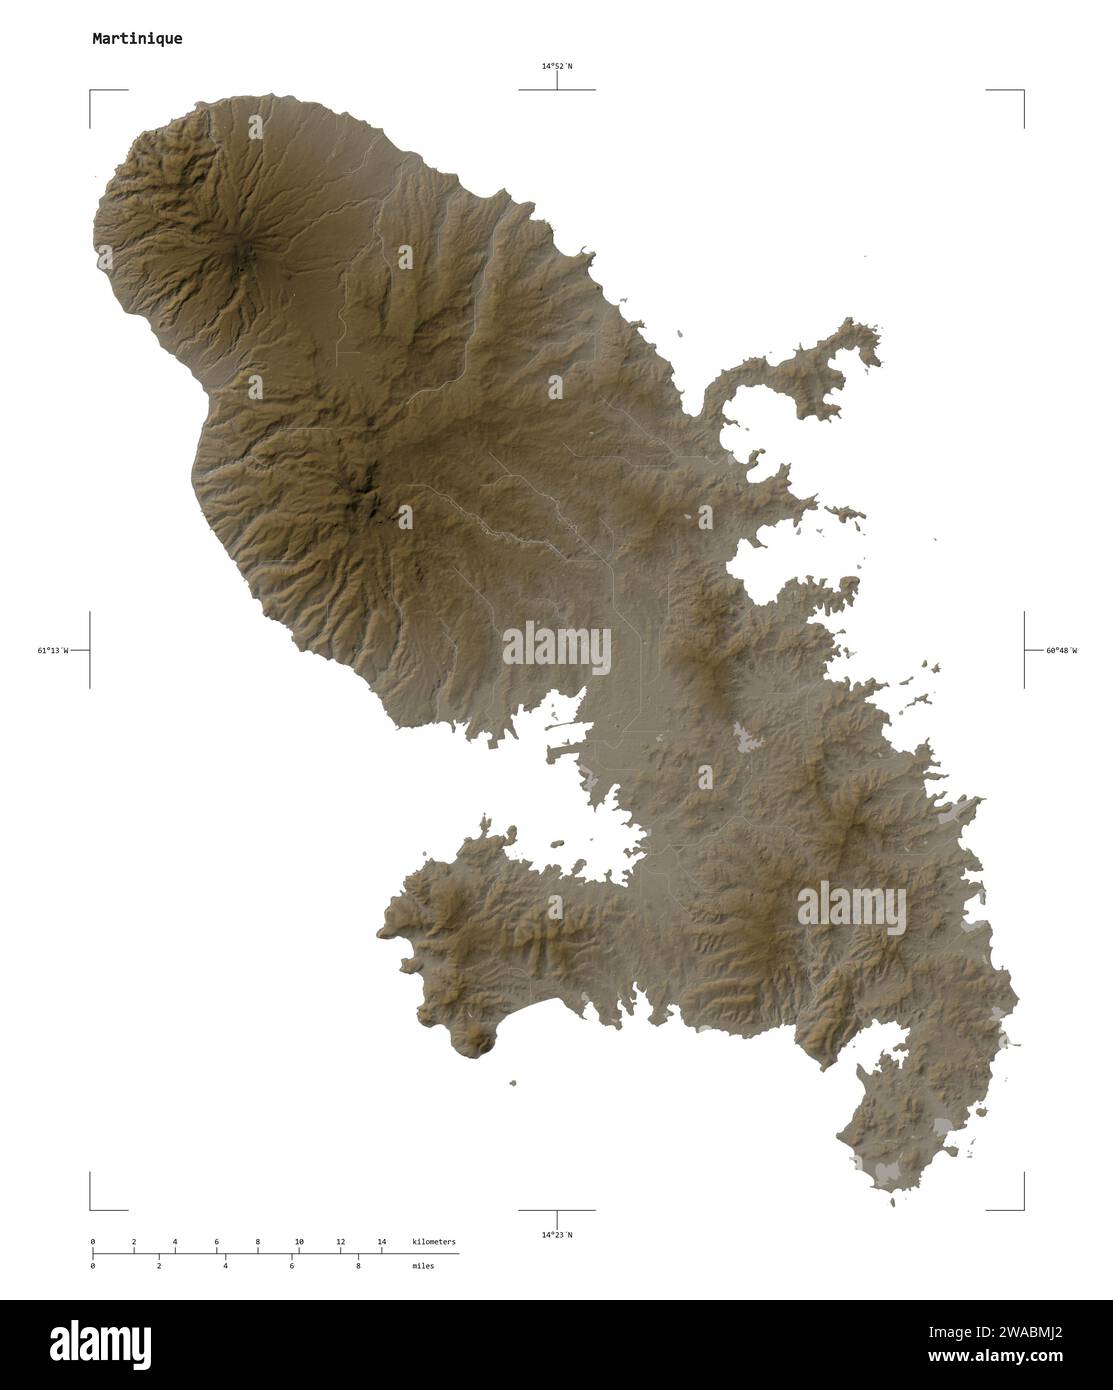 Forme d'une carte altimétrique colorée en tons sépia avec des lacs et rivières de la Martinique, avec échelle de distance et coordonnées de la frontière de la carte, isolé sur W Banque D'Images